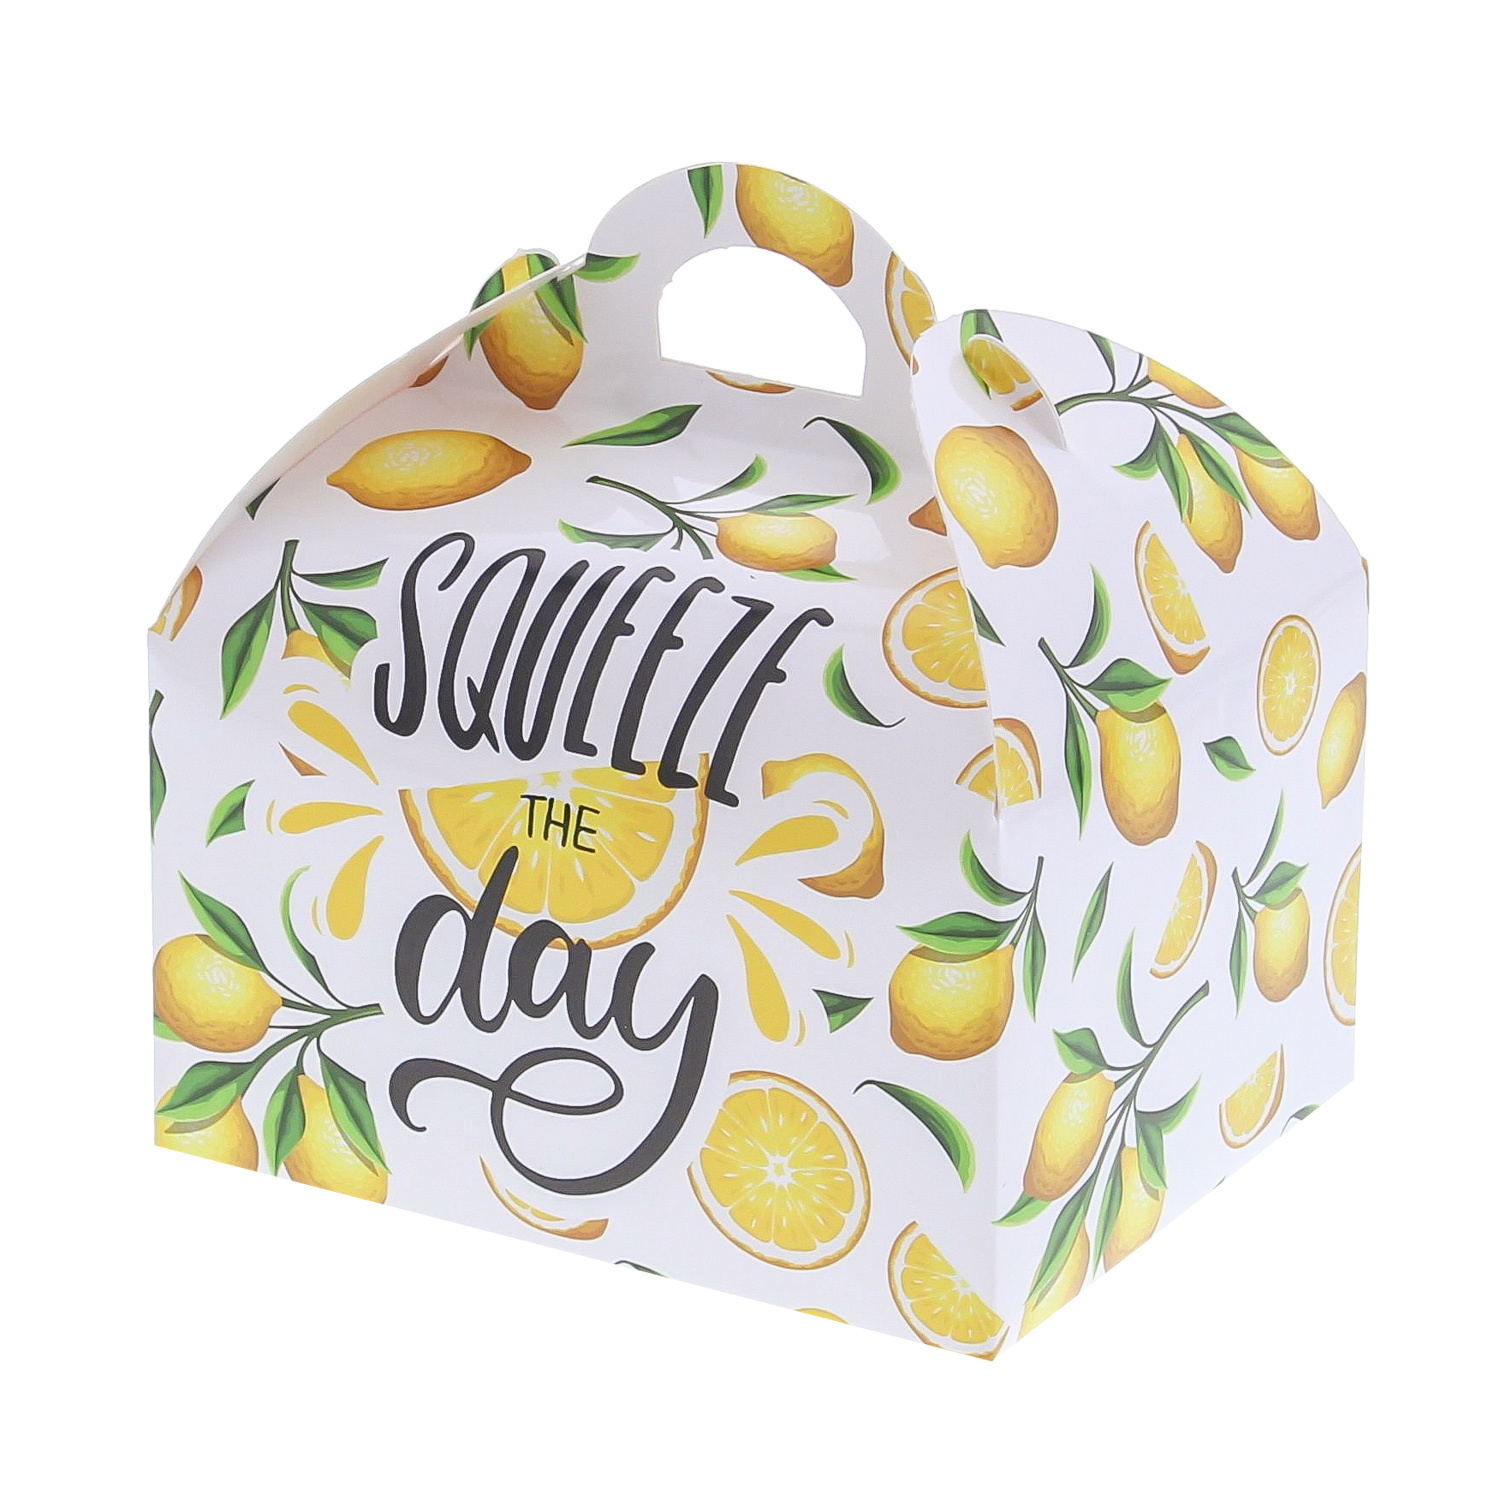 Sweetbox met handvatMAXI "Lemons" squeeze the day - 160*140*170 mm - 24 stuks